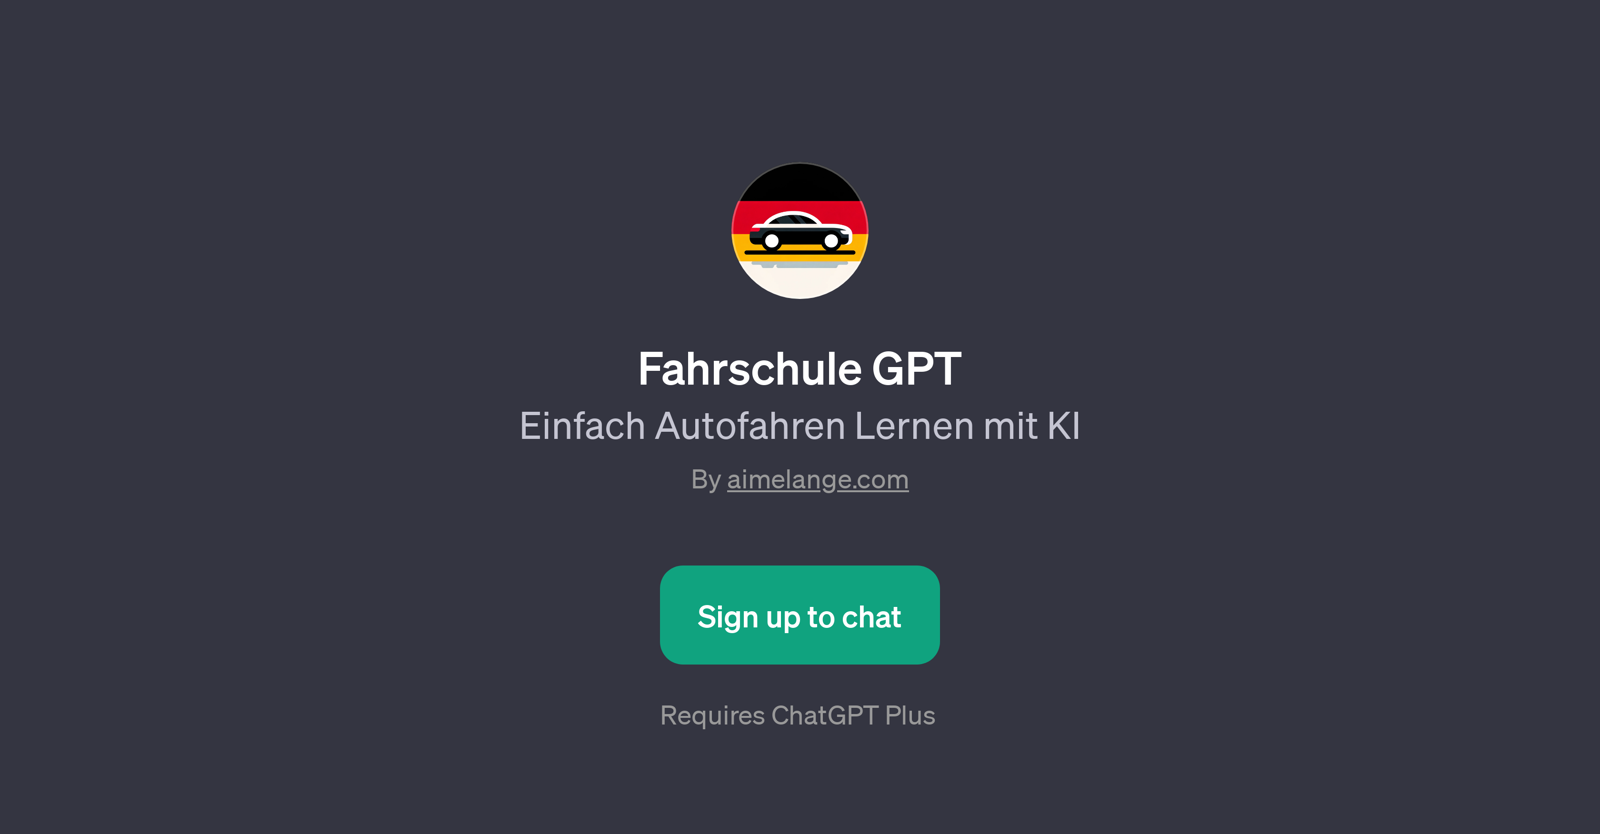 Fahrschule GPT website